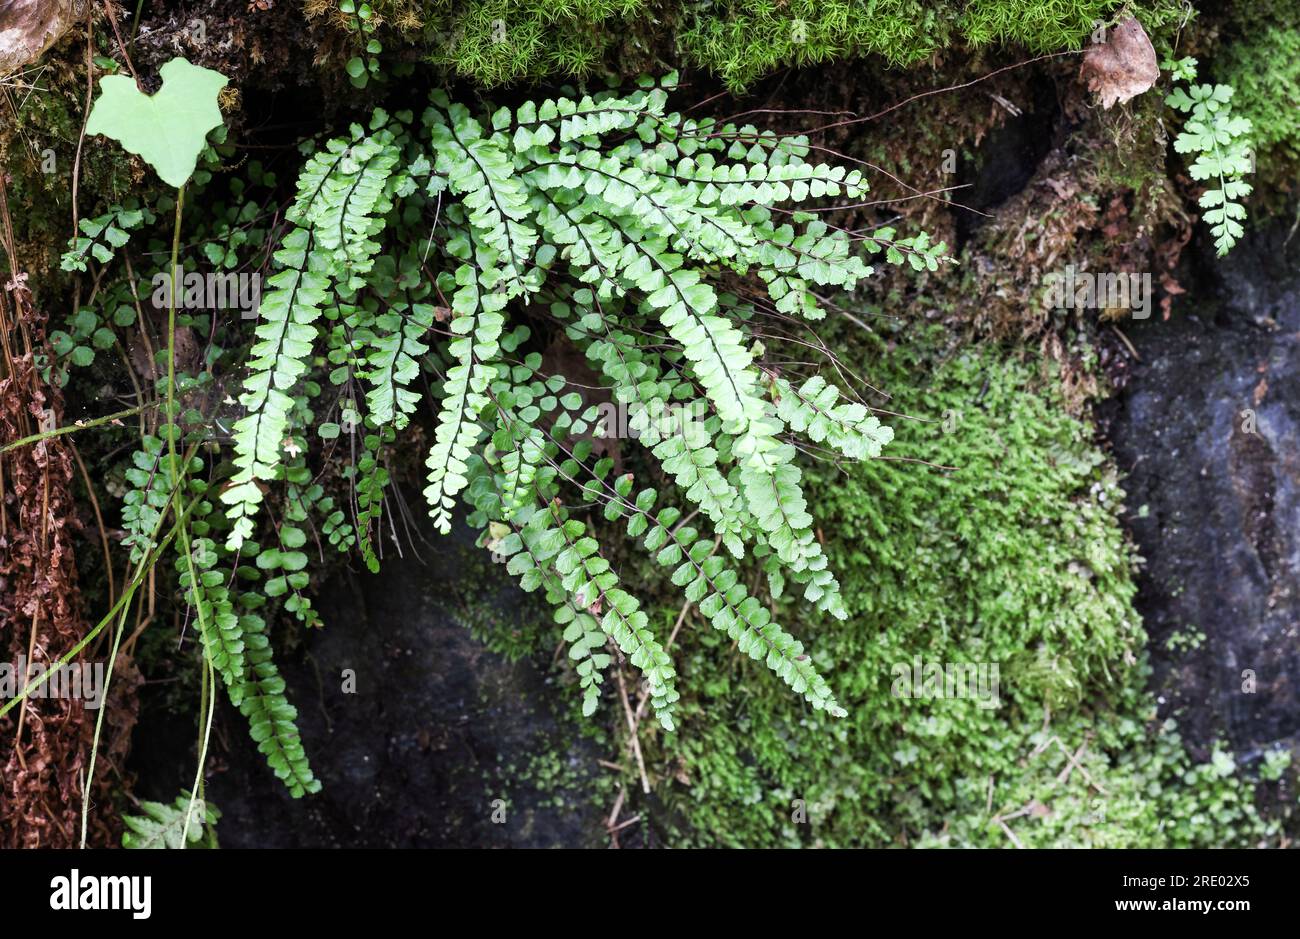 Maidenhair spleenwort Stock Photo